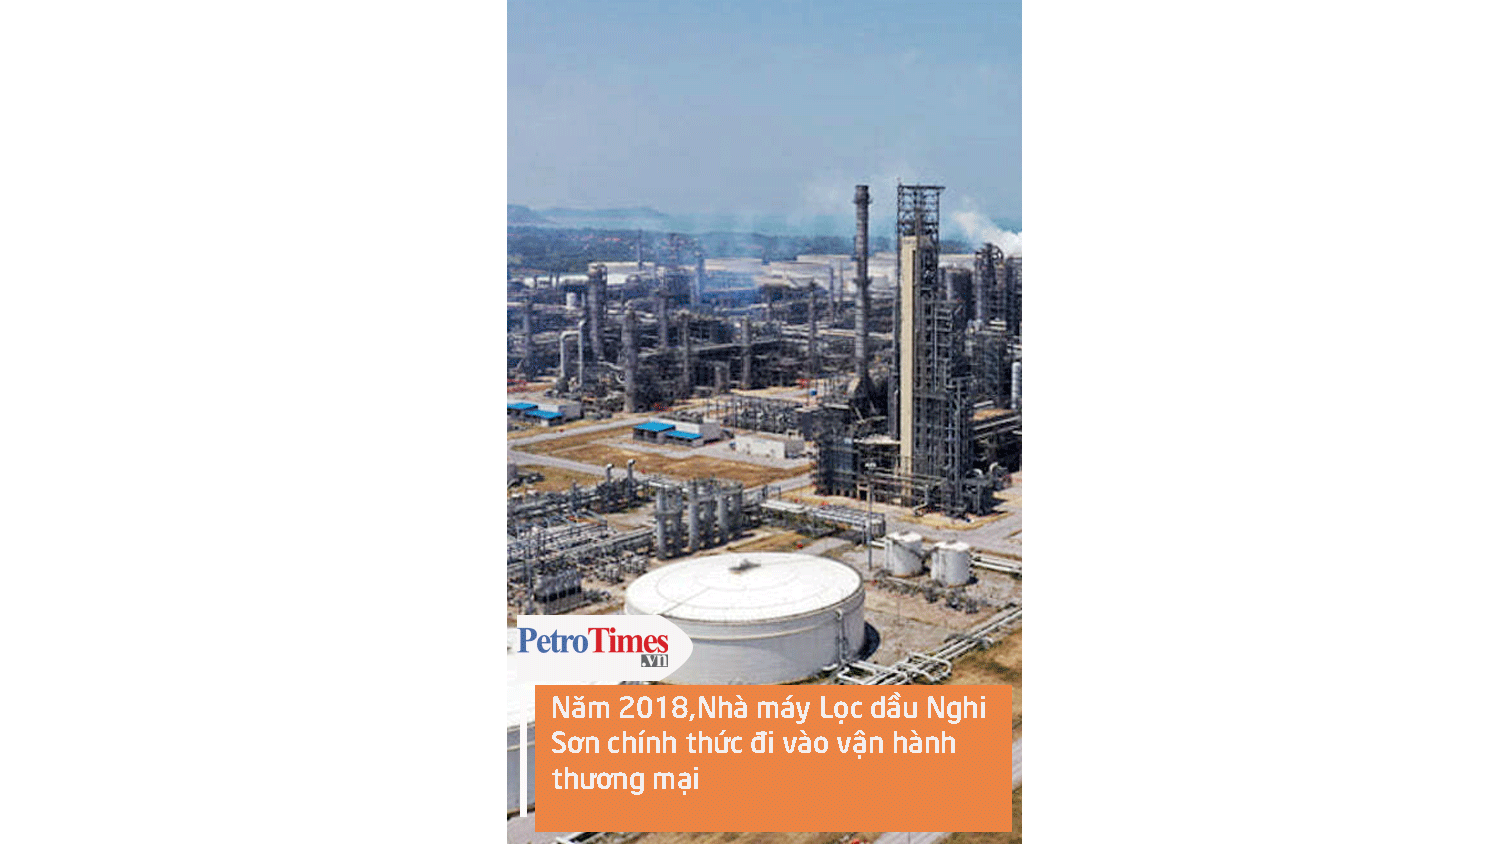 Năm 2018, Nhà máy Lọc dầu Nghi Sơn chính thức đi vào vận hành thương mại